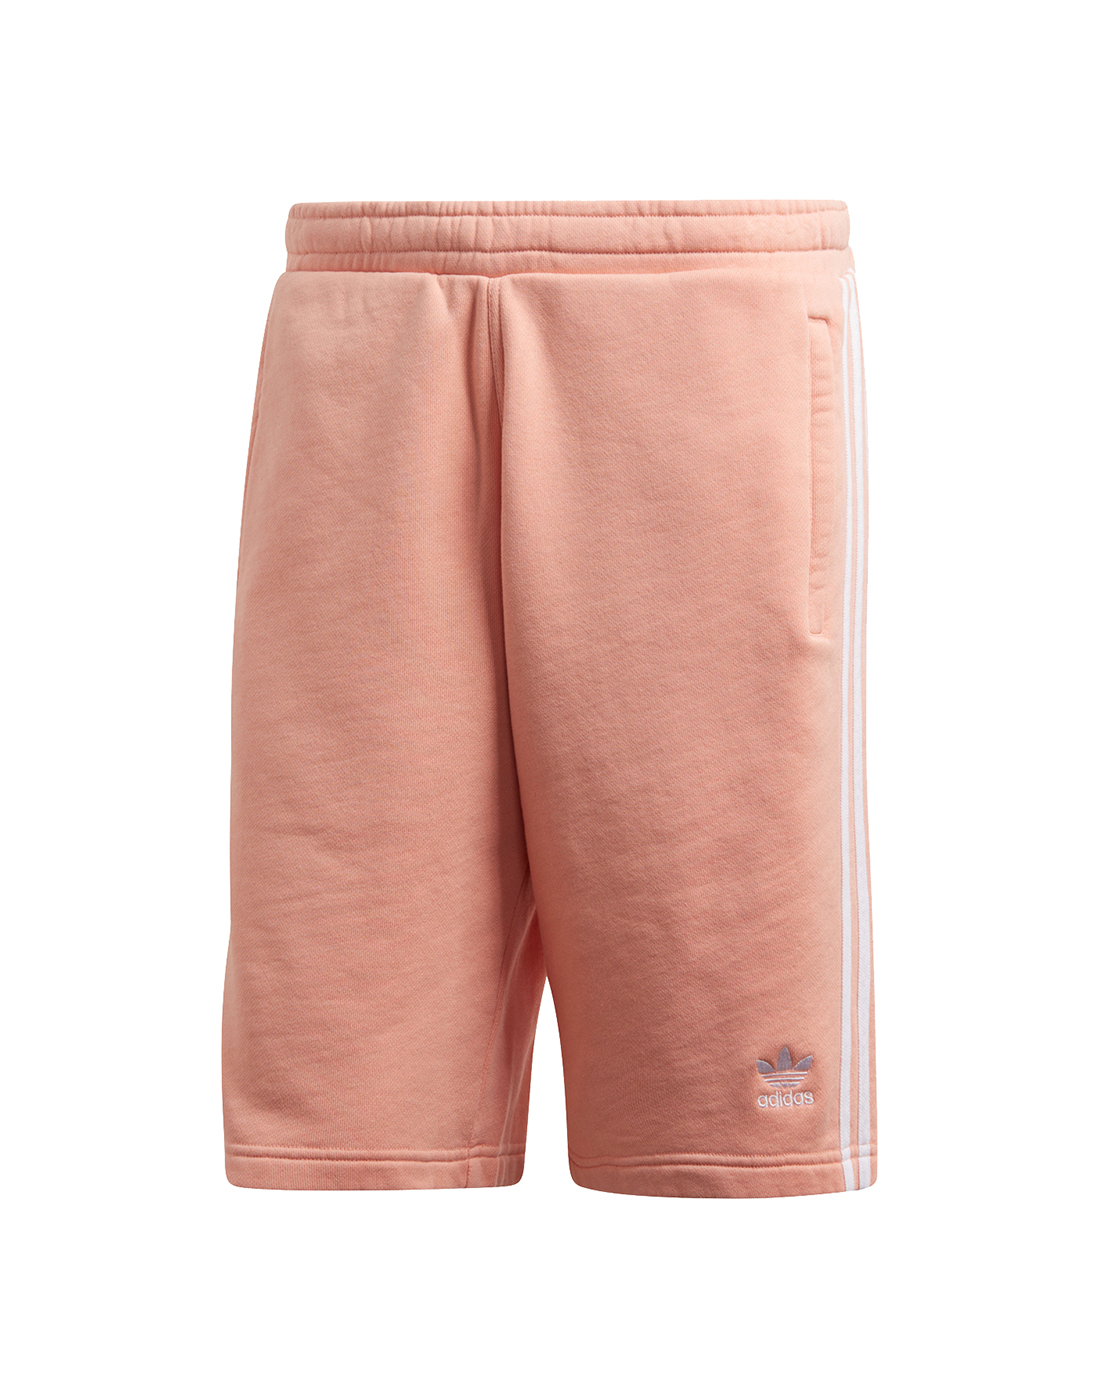 pink adidas shorts mens